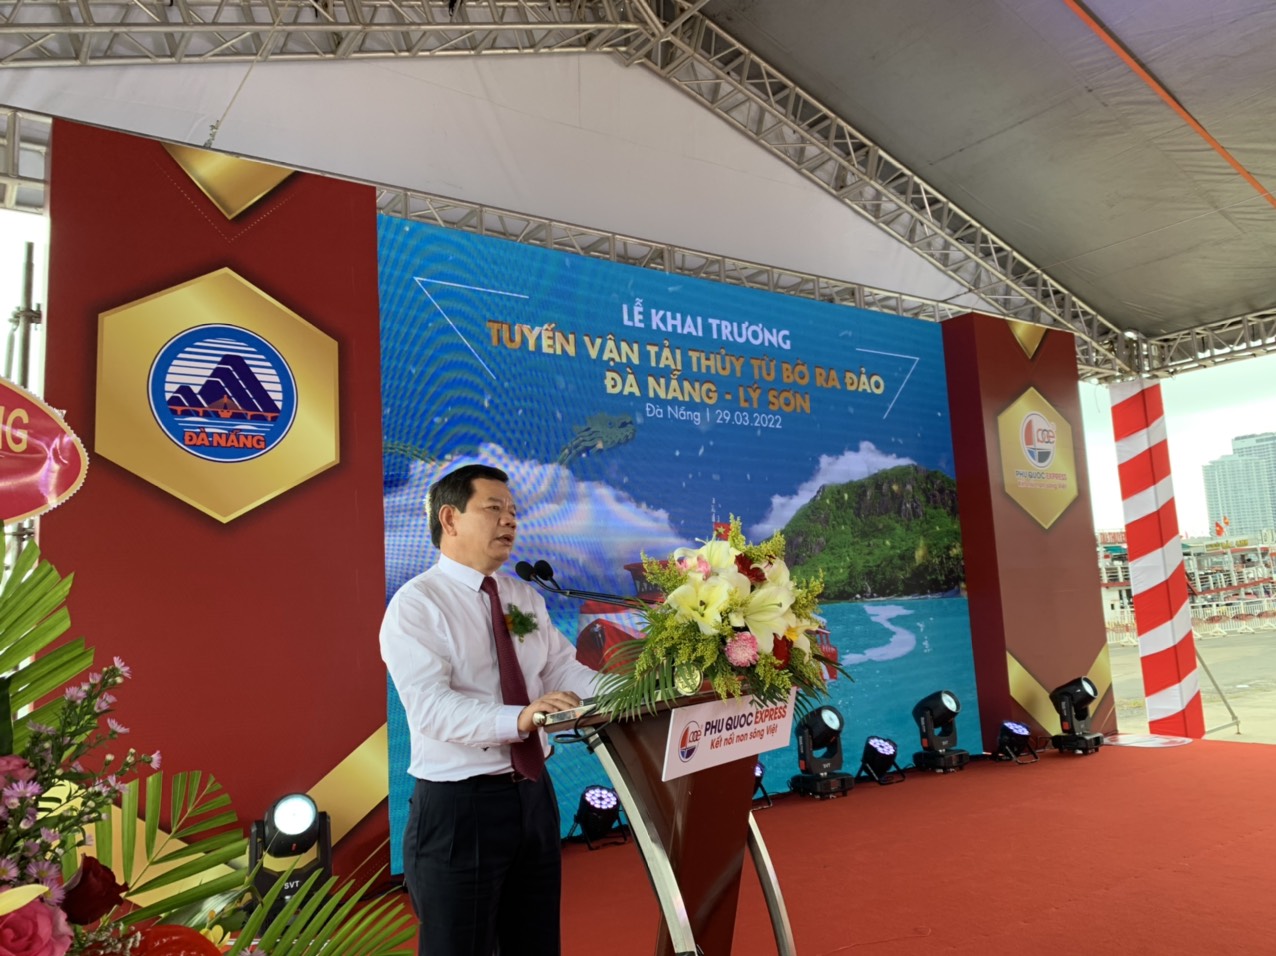 Phát biểu tại buổi lễ khai trương hôm đó, ông Đặng Văn Minh chủ tịch UBND tỉnh Quảng Ngãi cho biết việc đưa vào hoạt động tuyến vận tải thủy này có ý nghĩa đặc biệt quan trọng với chính quyền và nhân dân tỉnh Quảng Ngãi.